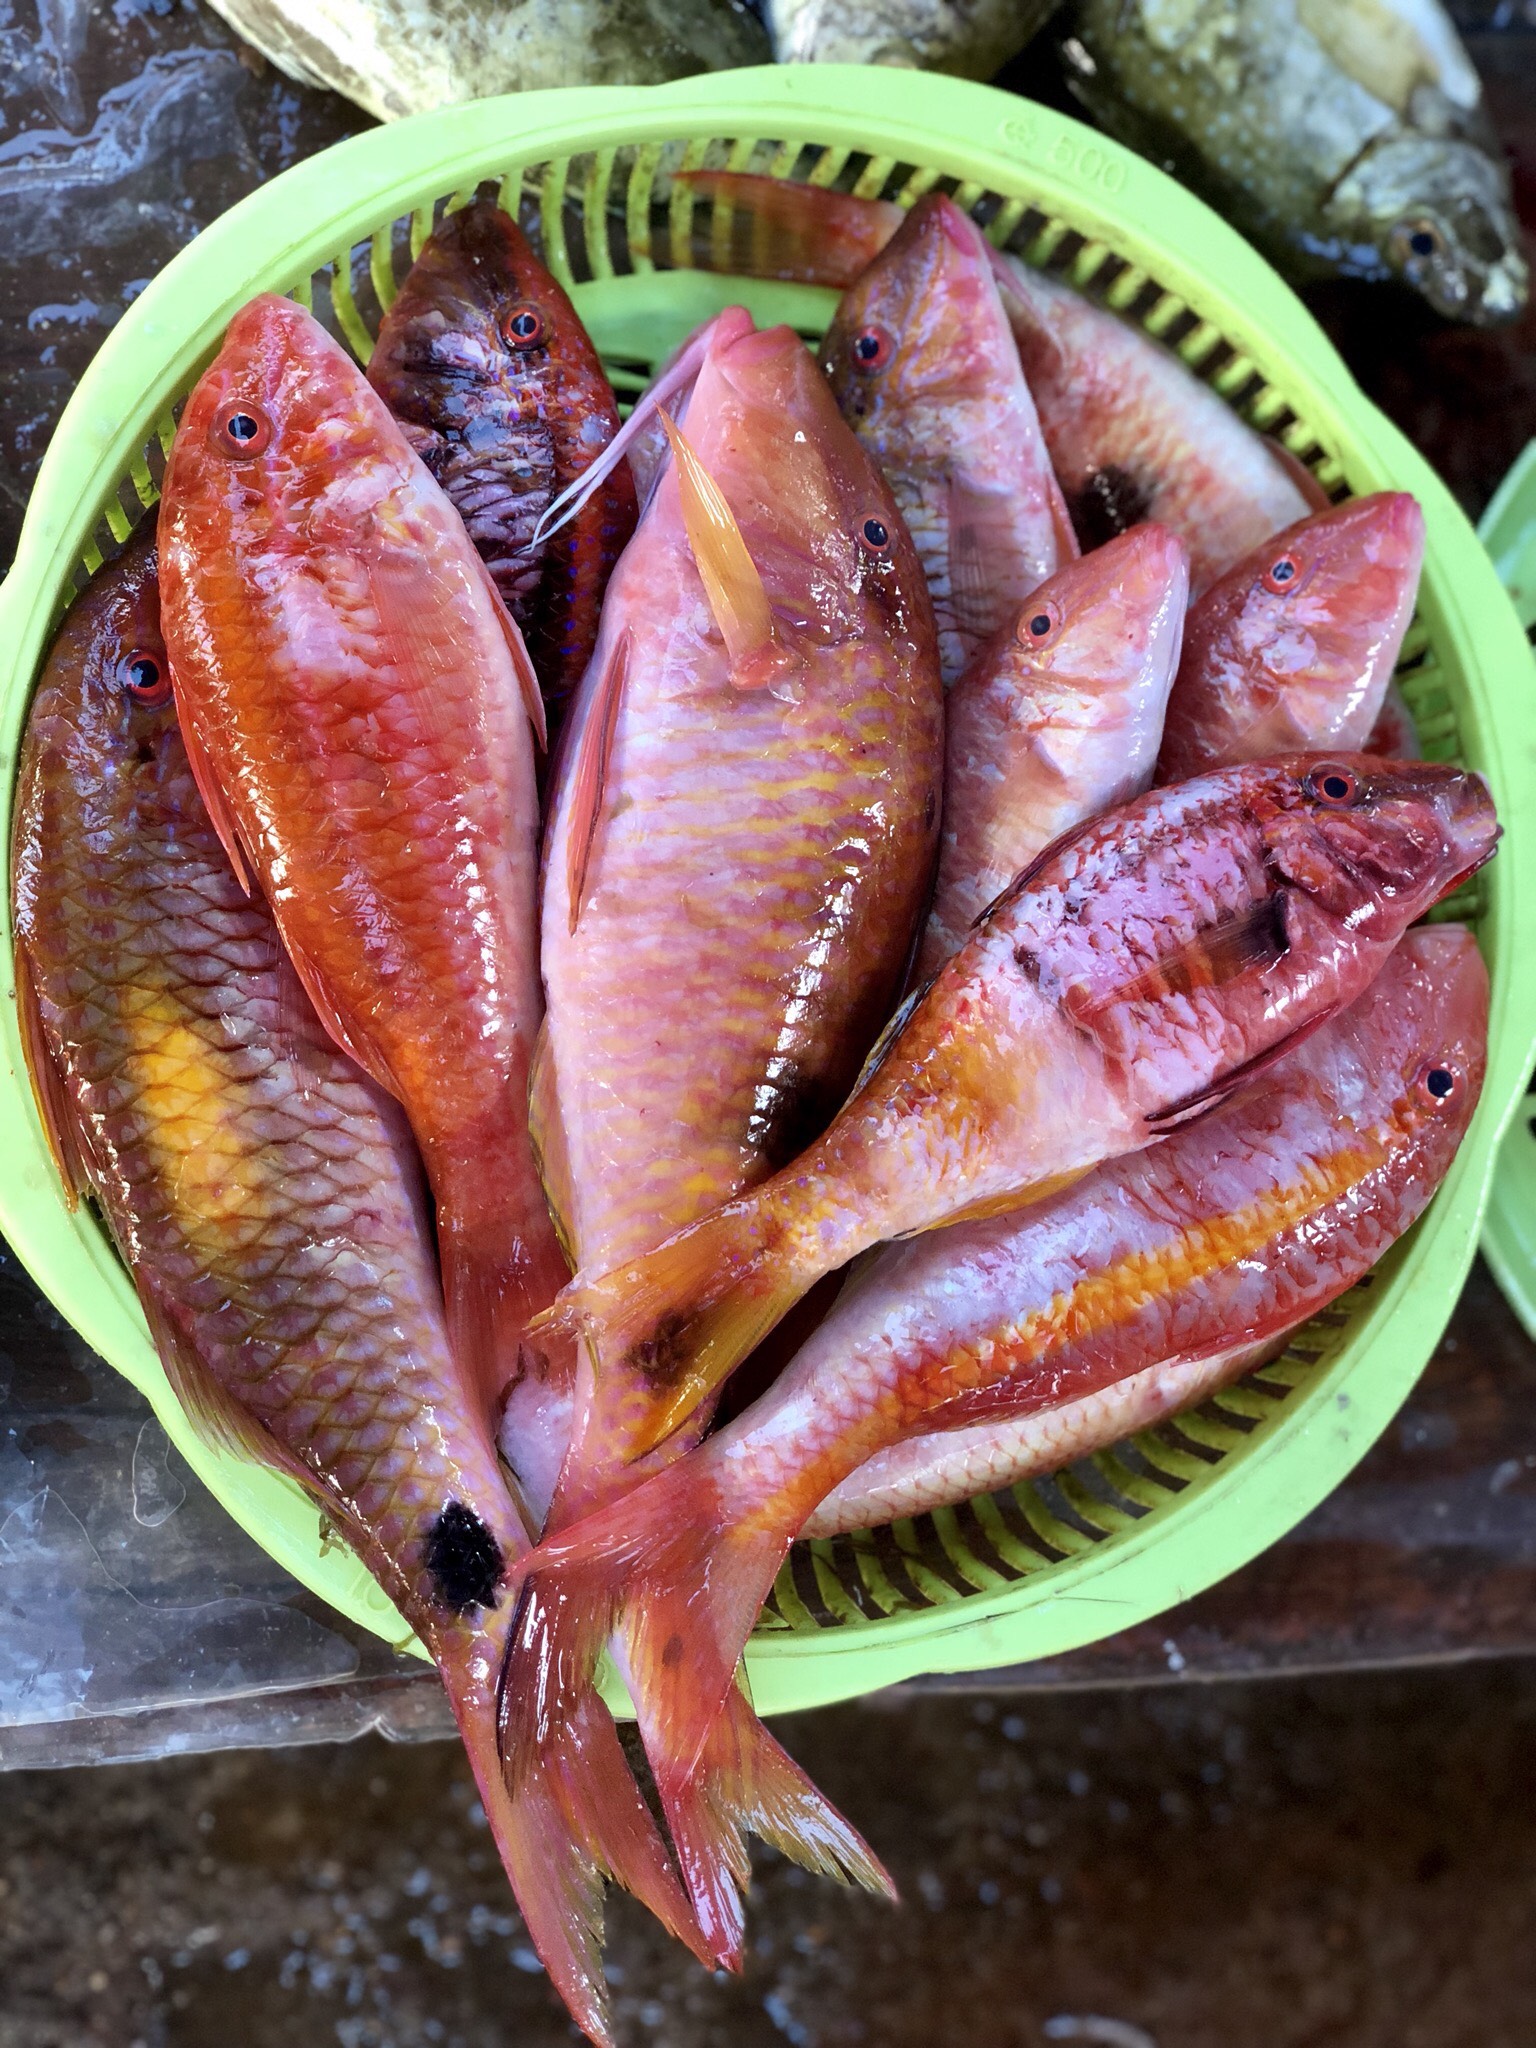 Loại cá tên nghe kỳ cục lại có màu hồng mộng mơ là đặc sản ngon ngọt thịt rất được ưa chuộng ở Quảng Ninh